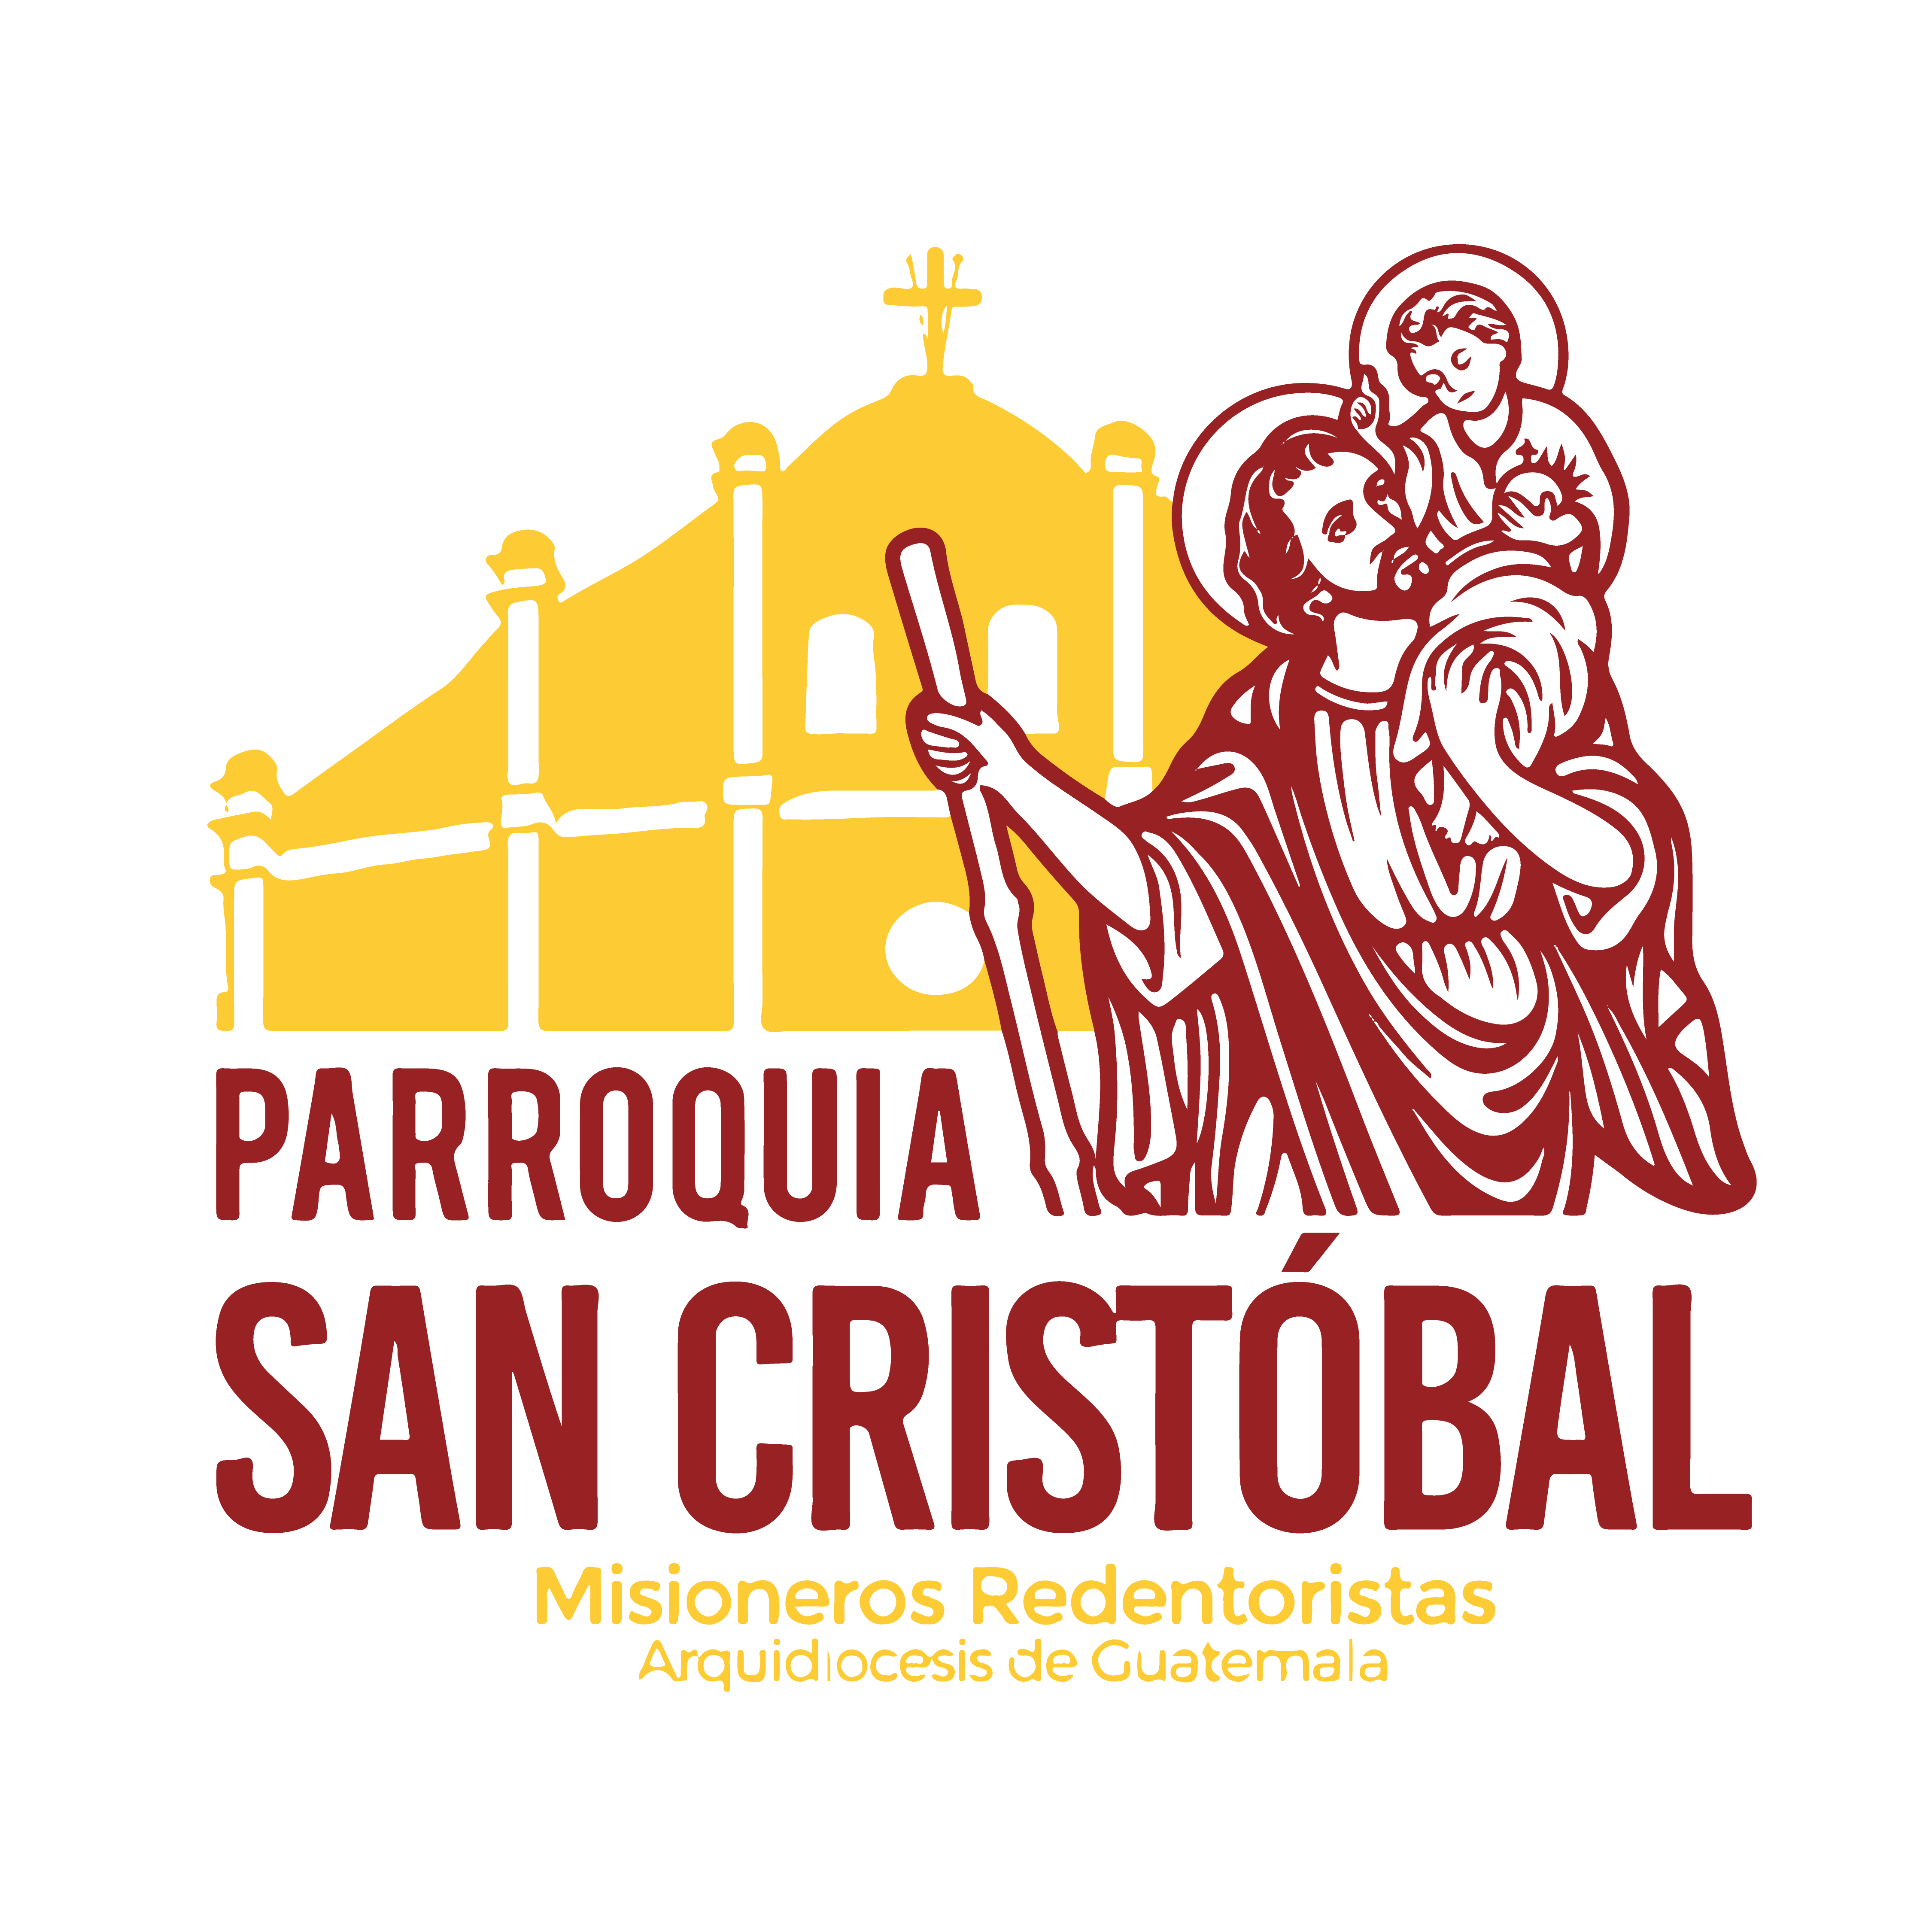 Parroquia San Cristobal